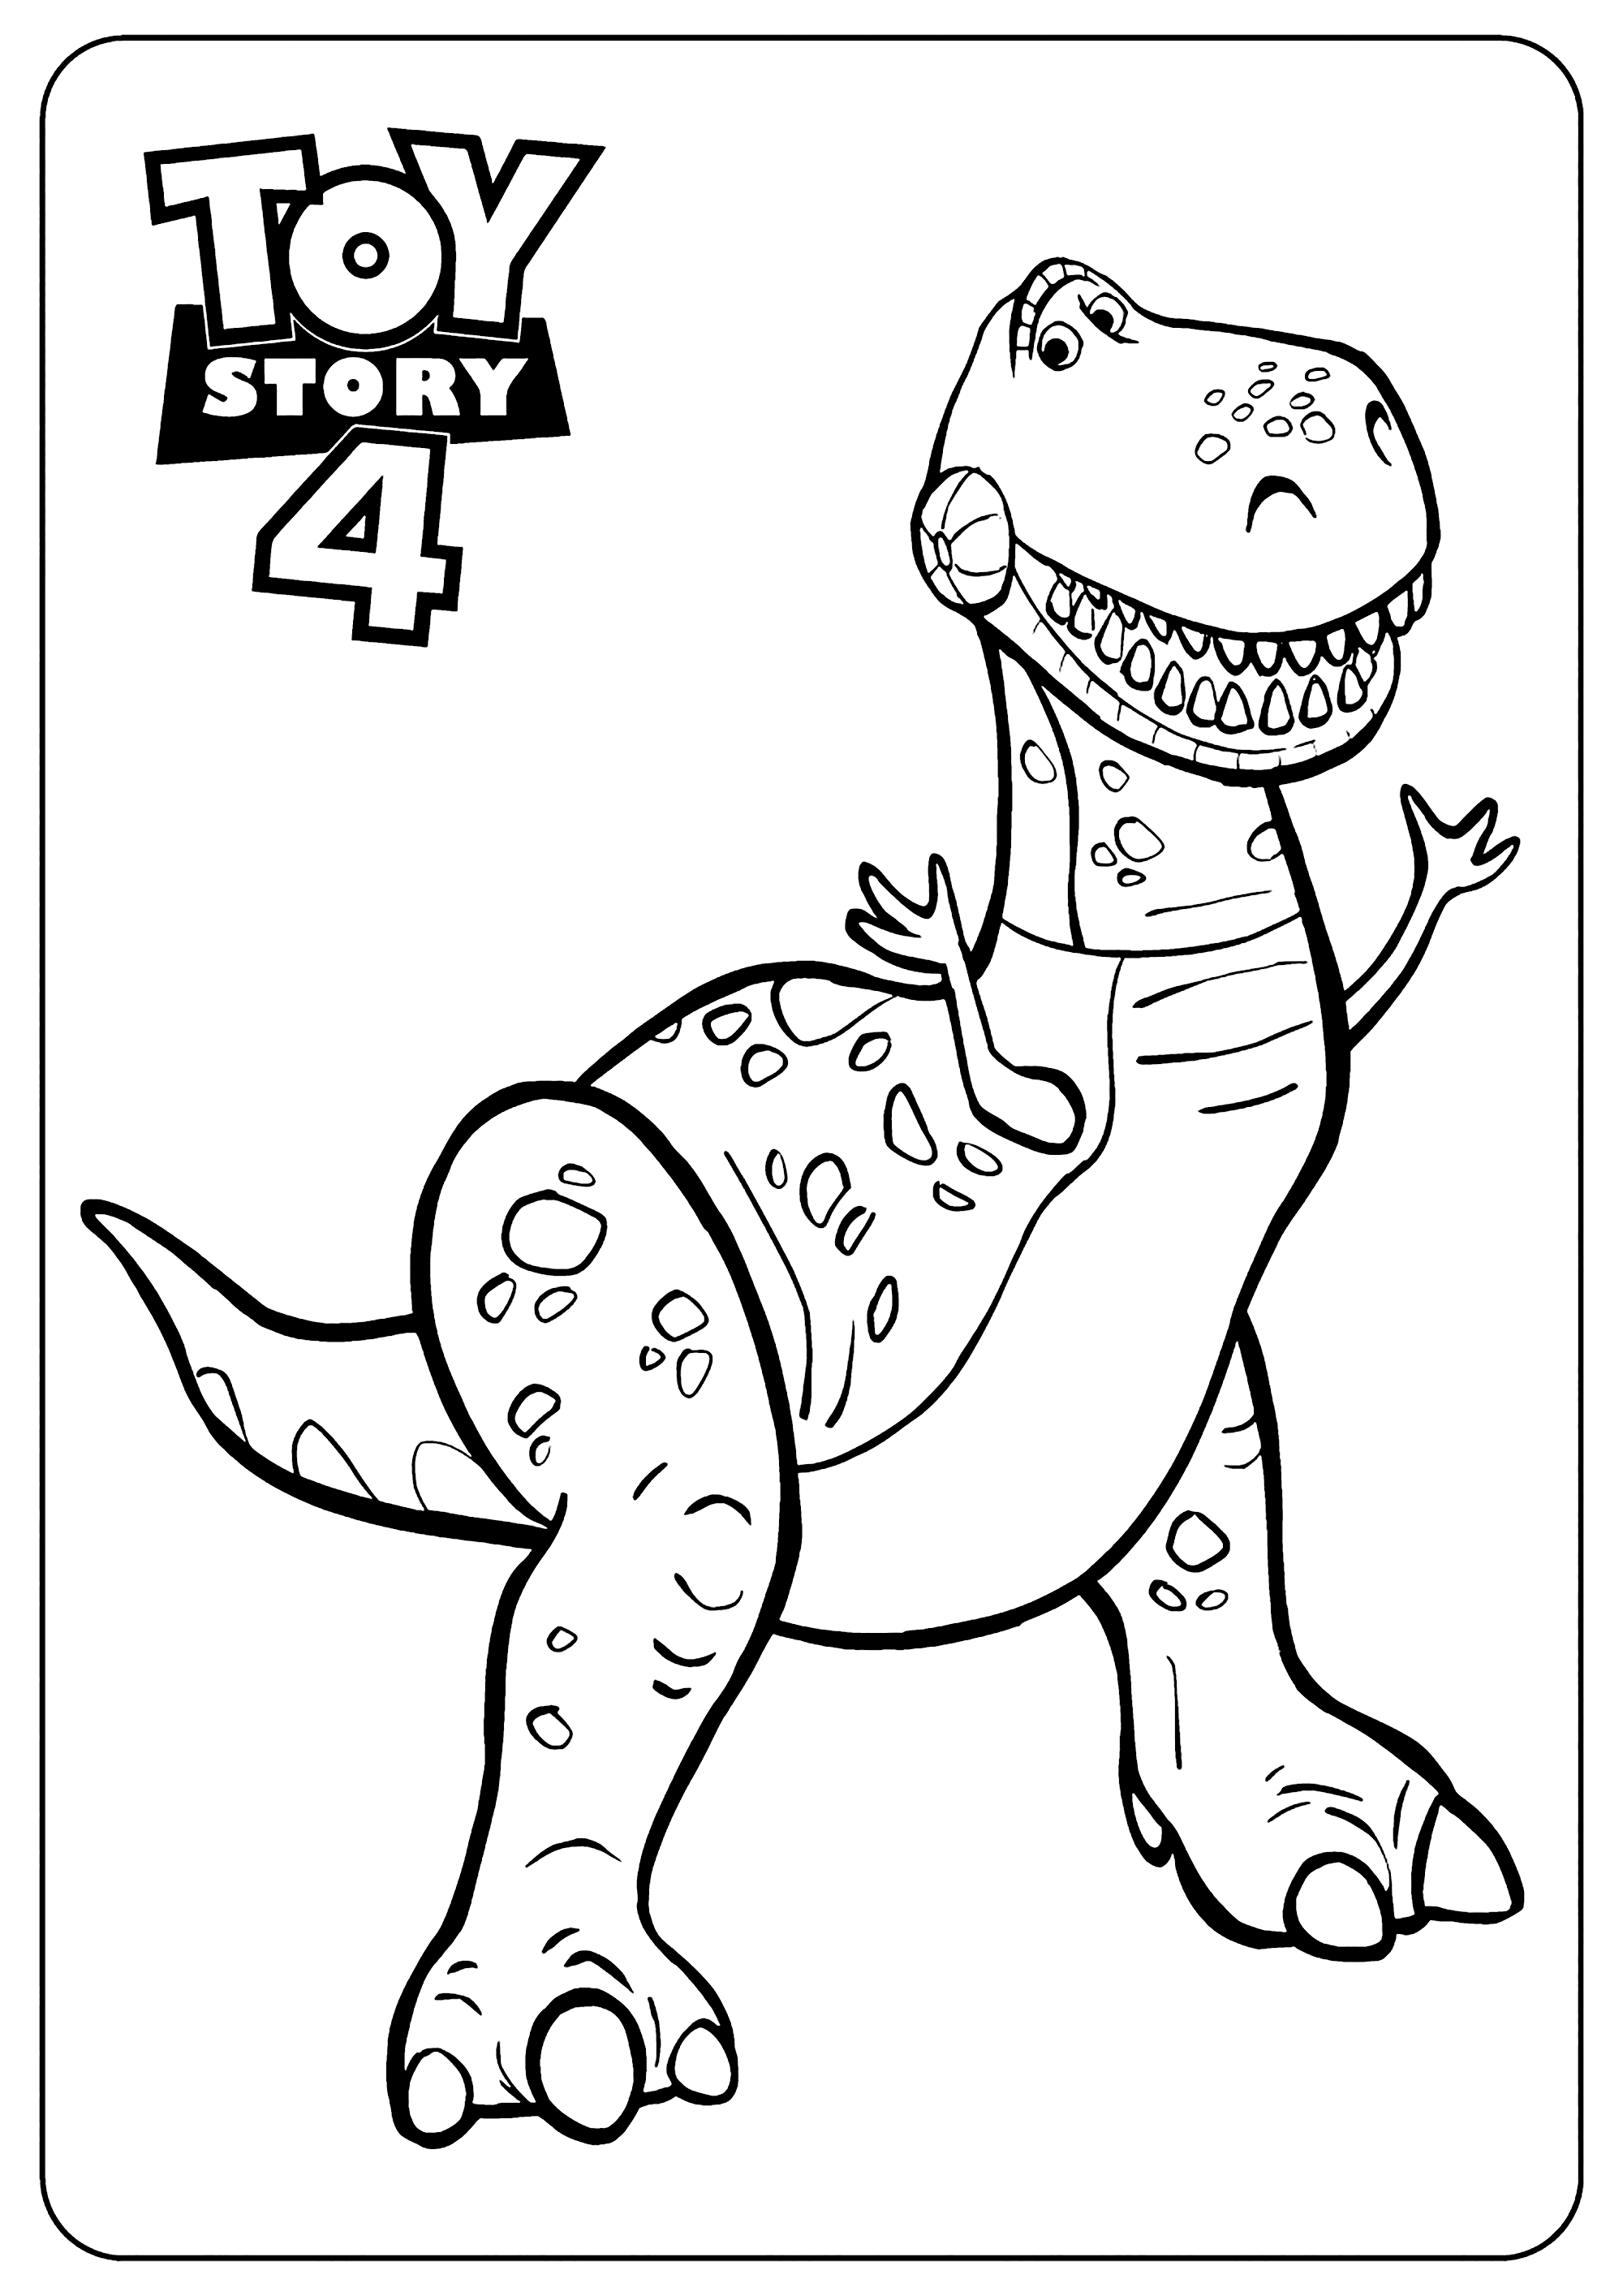 Dibujo de Toy Story 4 para imprimir y colorear : Dino